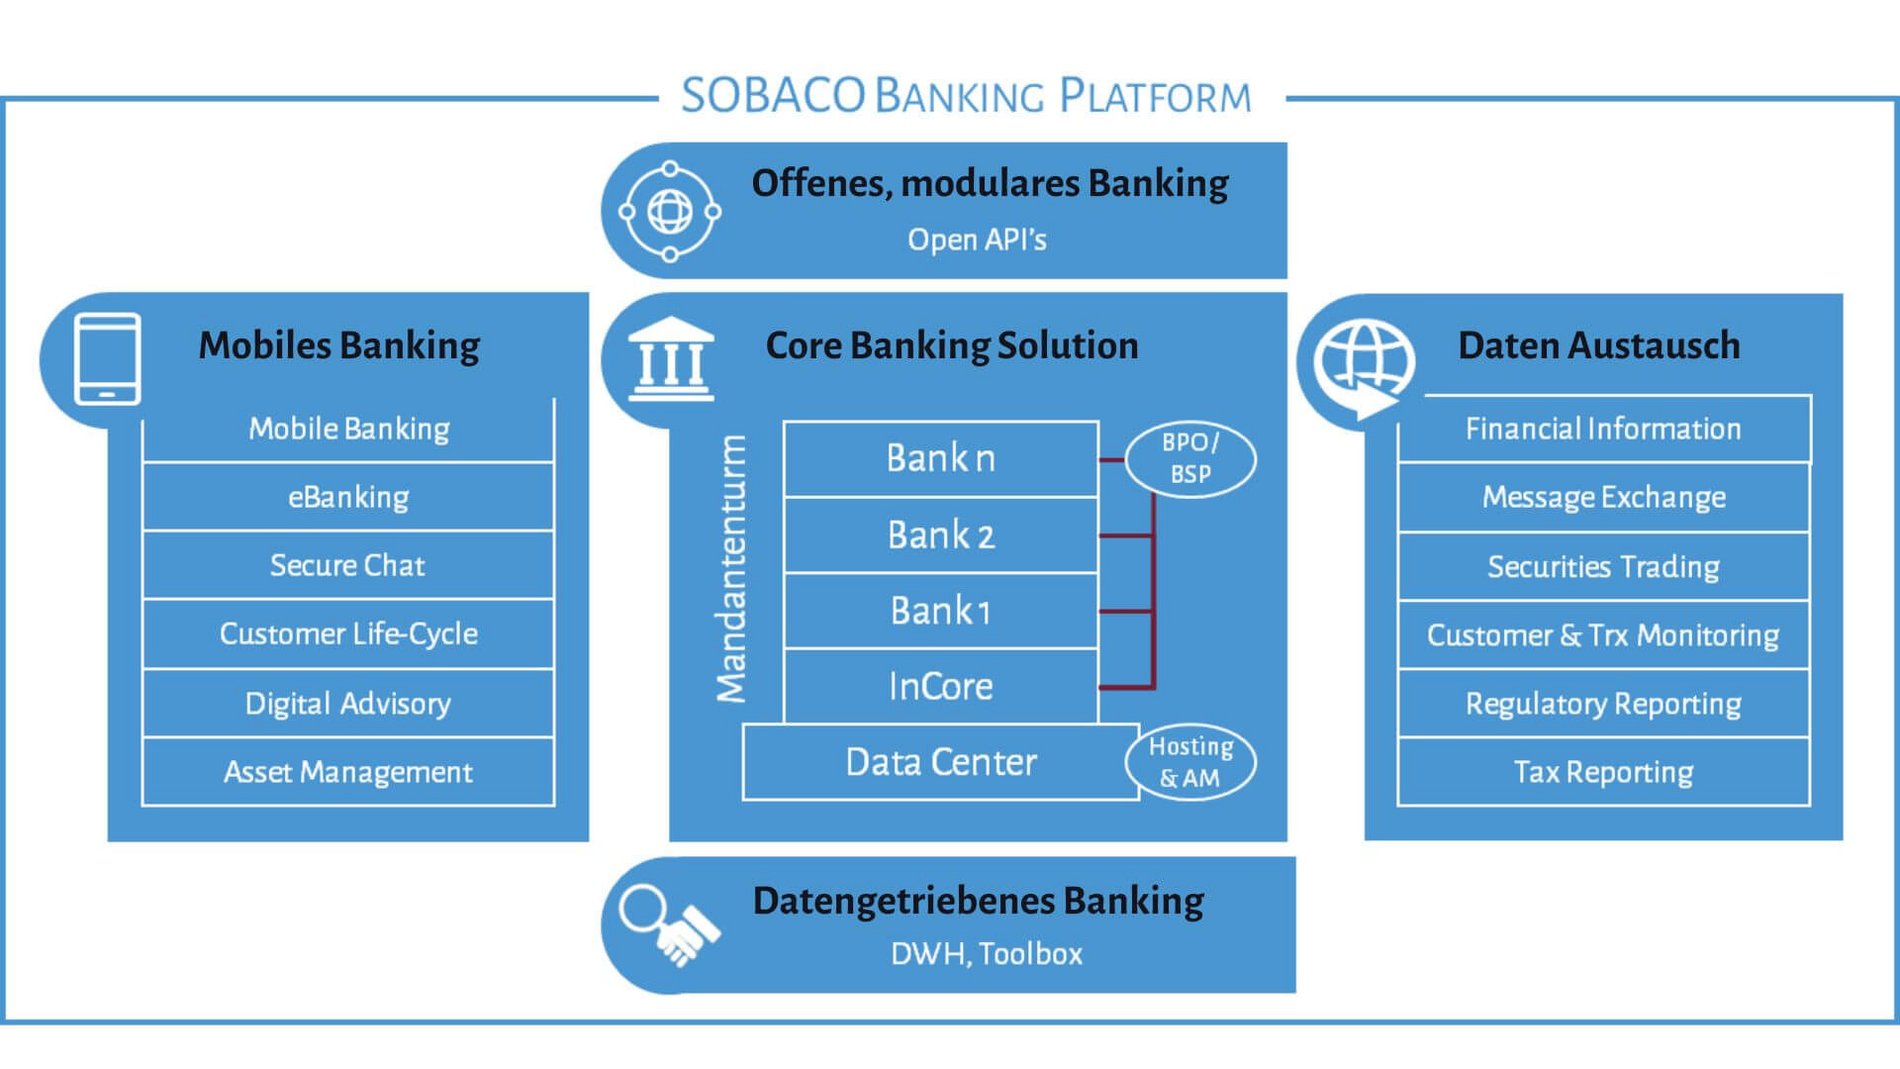 Die SOBACO Banking Plattform auf einen Blick